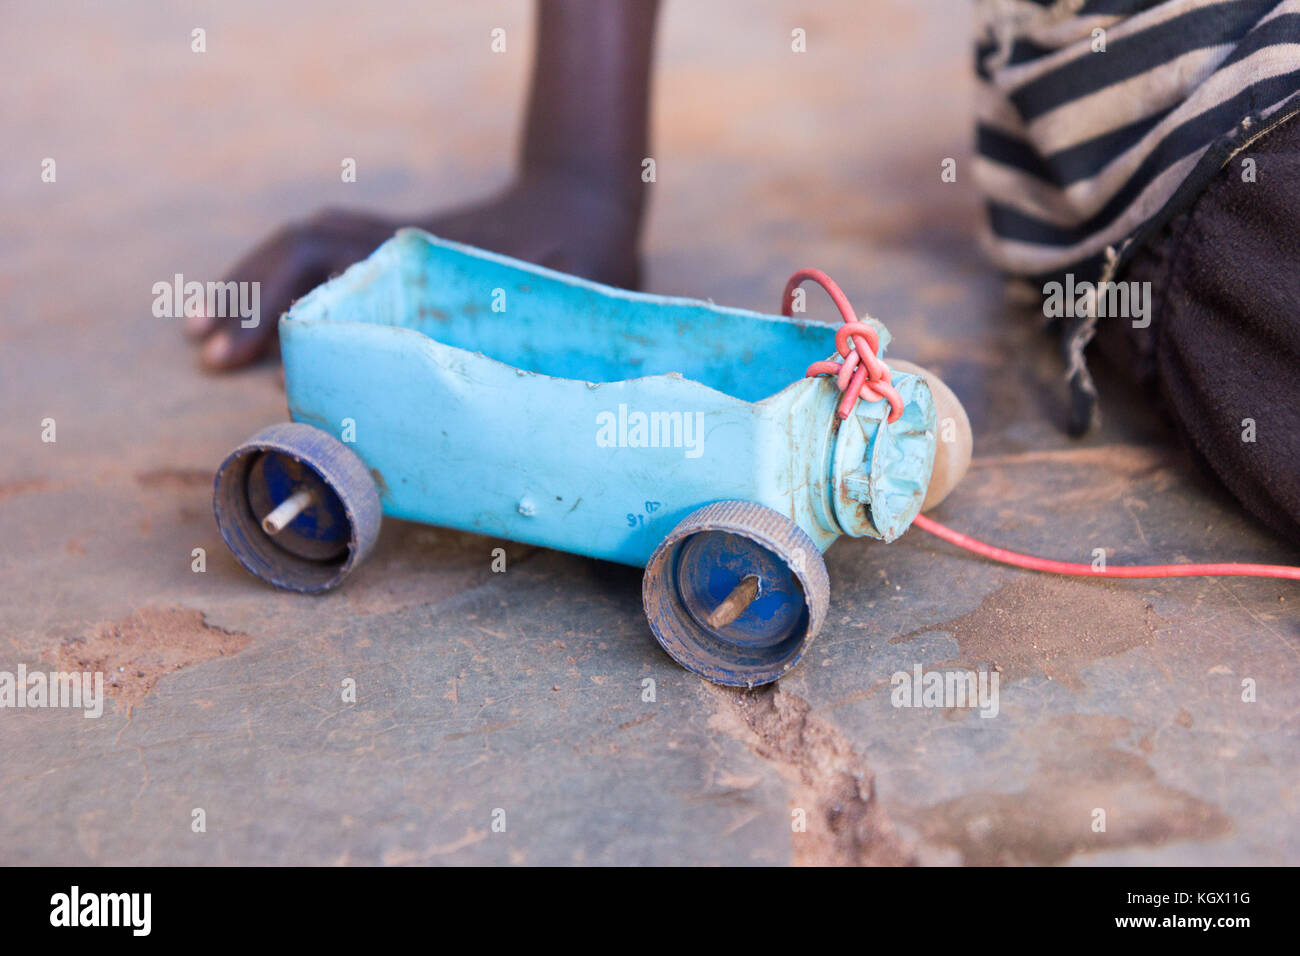 Ein einfaches Spielzeug Auto aus Kunststoff, Flaschenverschlüsse und Spieß Sticks. Foto im Najja, Uganda am 9. Mai 2017 berücksichtigt. Stockfoto